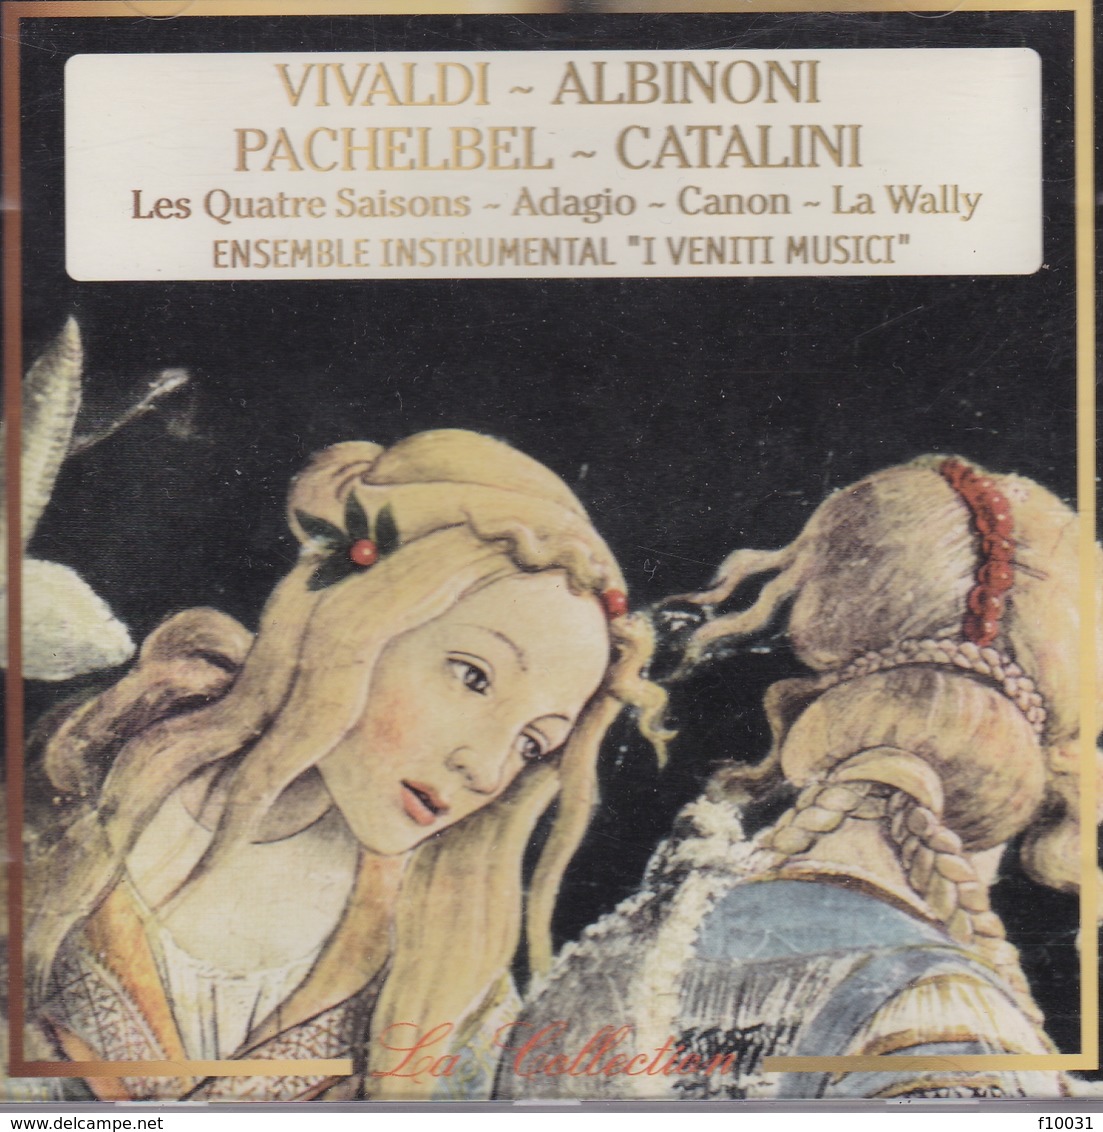 VIVALDI - ALBINONI - Classical